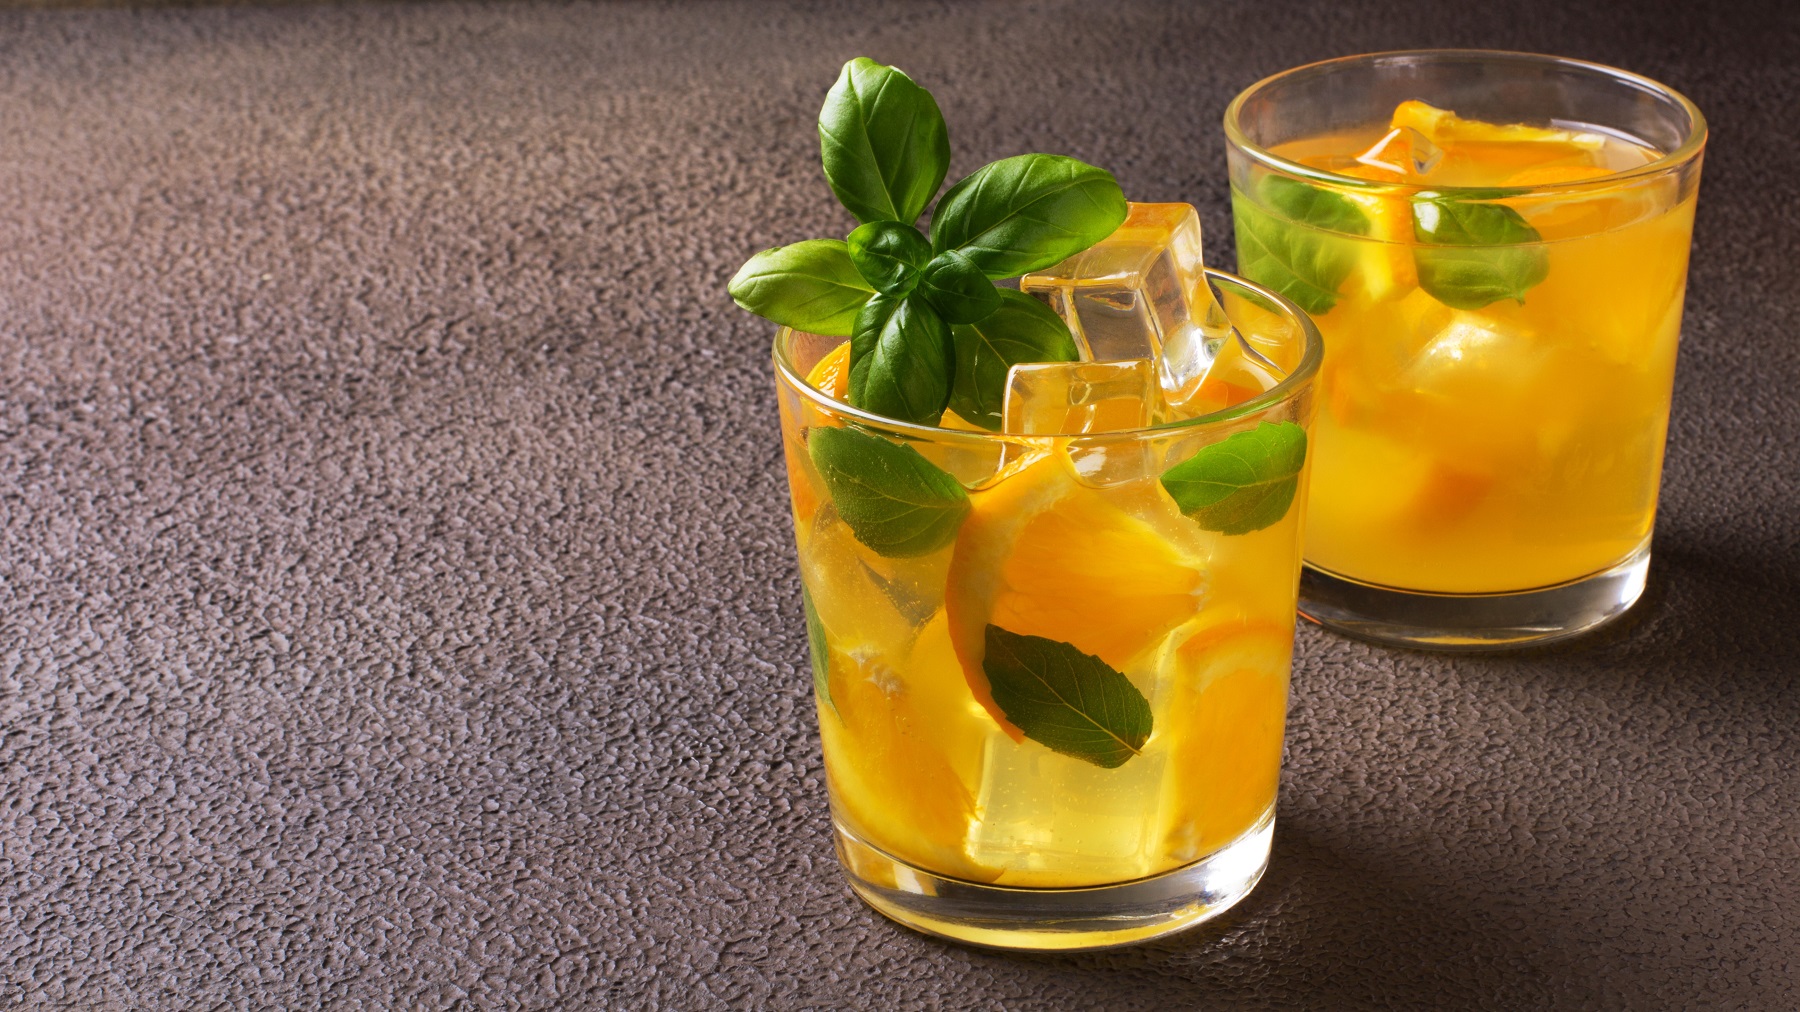 Orangen-Basilikum-Limonade in zwei Gläsern, garniert mit Basilikumblättern und Eiswürfeln.